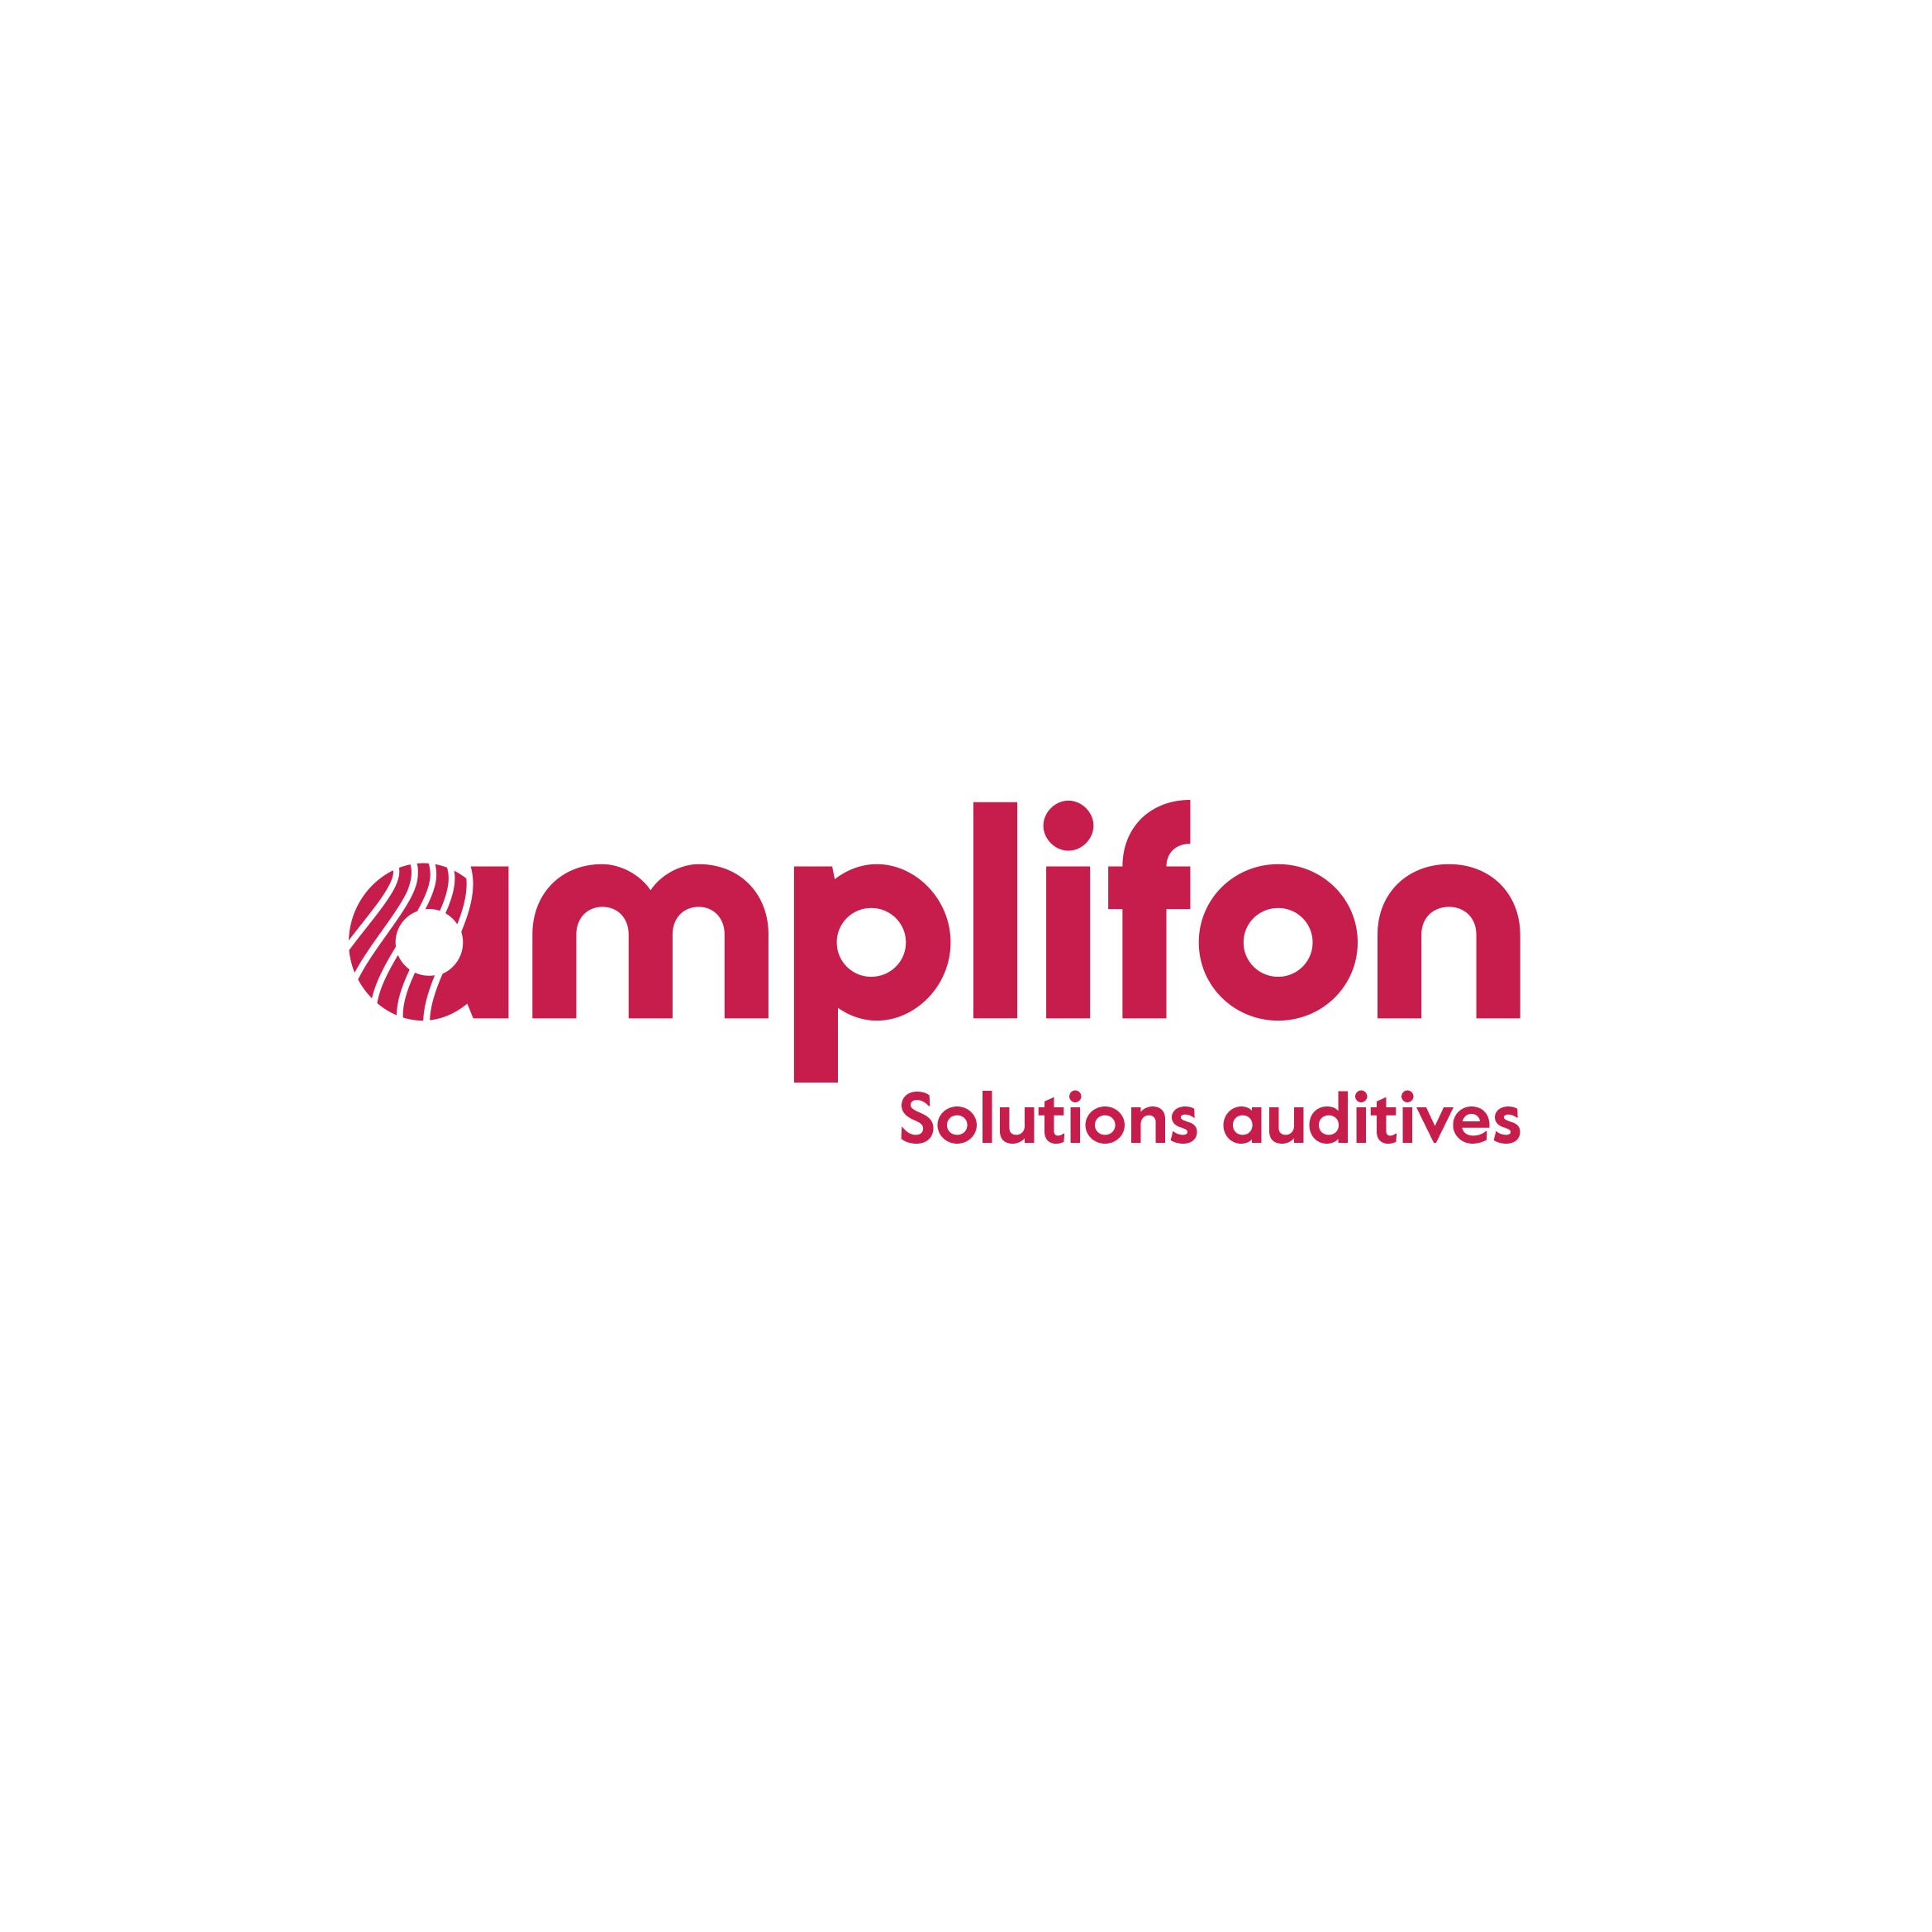 Amplifon Audioprothésiste Bain République - Hearing Aid Store - Bain de Bretagne - 02 99 43 82 03 France | ShowMeLocal.com